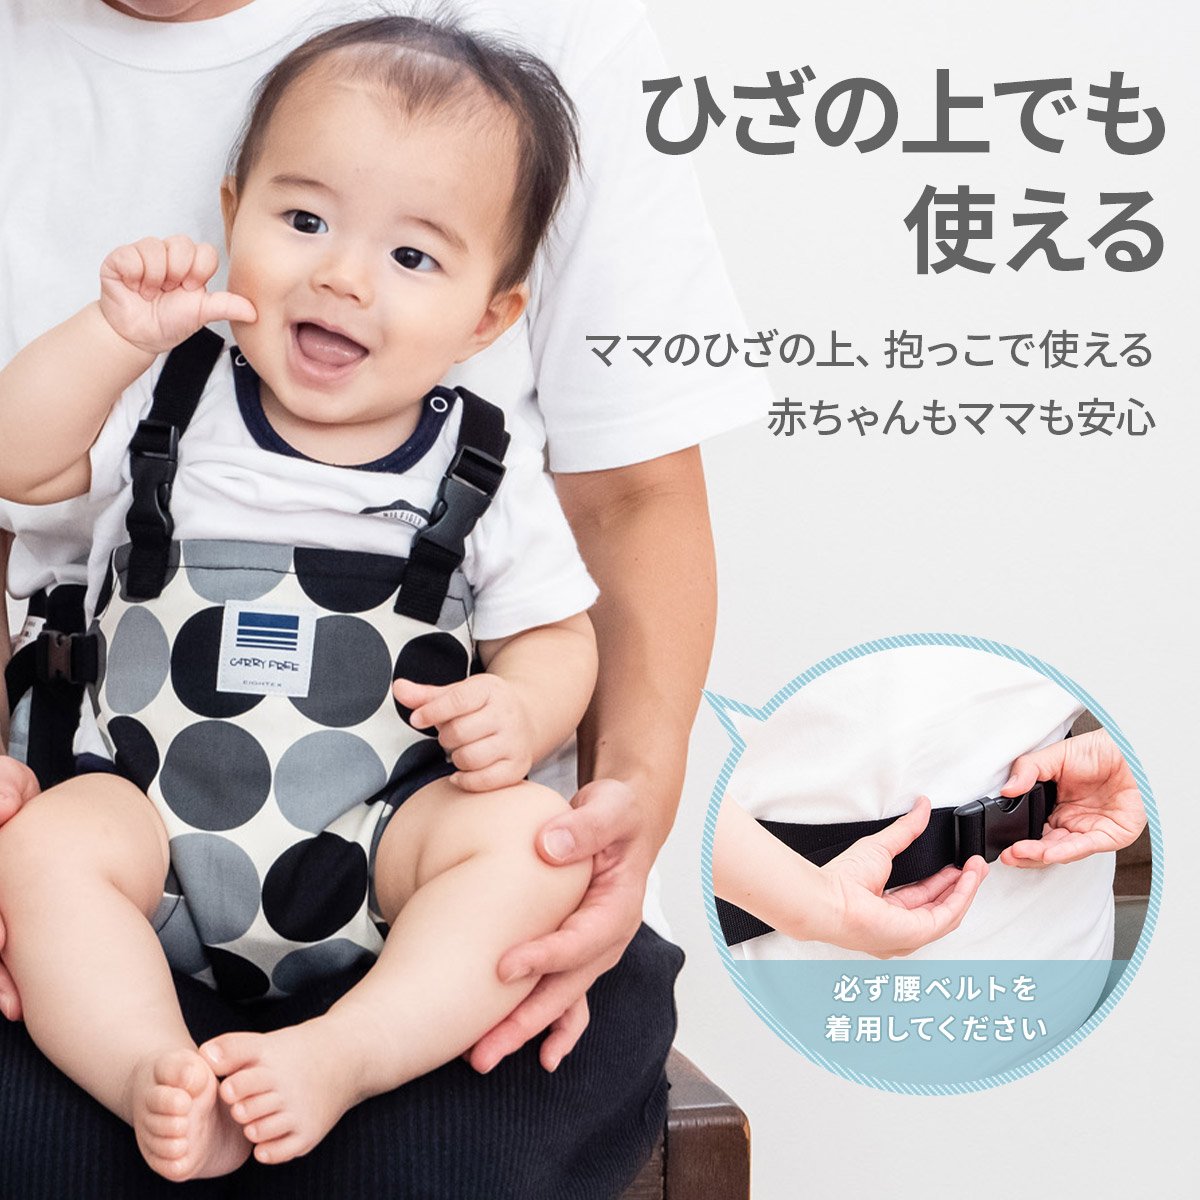 kyali свободный стул ремень Hold плечо baby плечо ремень младенец сделано в Японии . сиденье . пассажирский стул стул вращение . предотвращение детский стул звезда рисунок стандартный товар поддержка ремень 